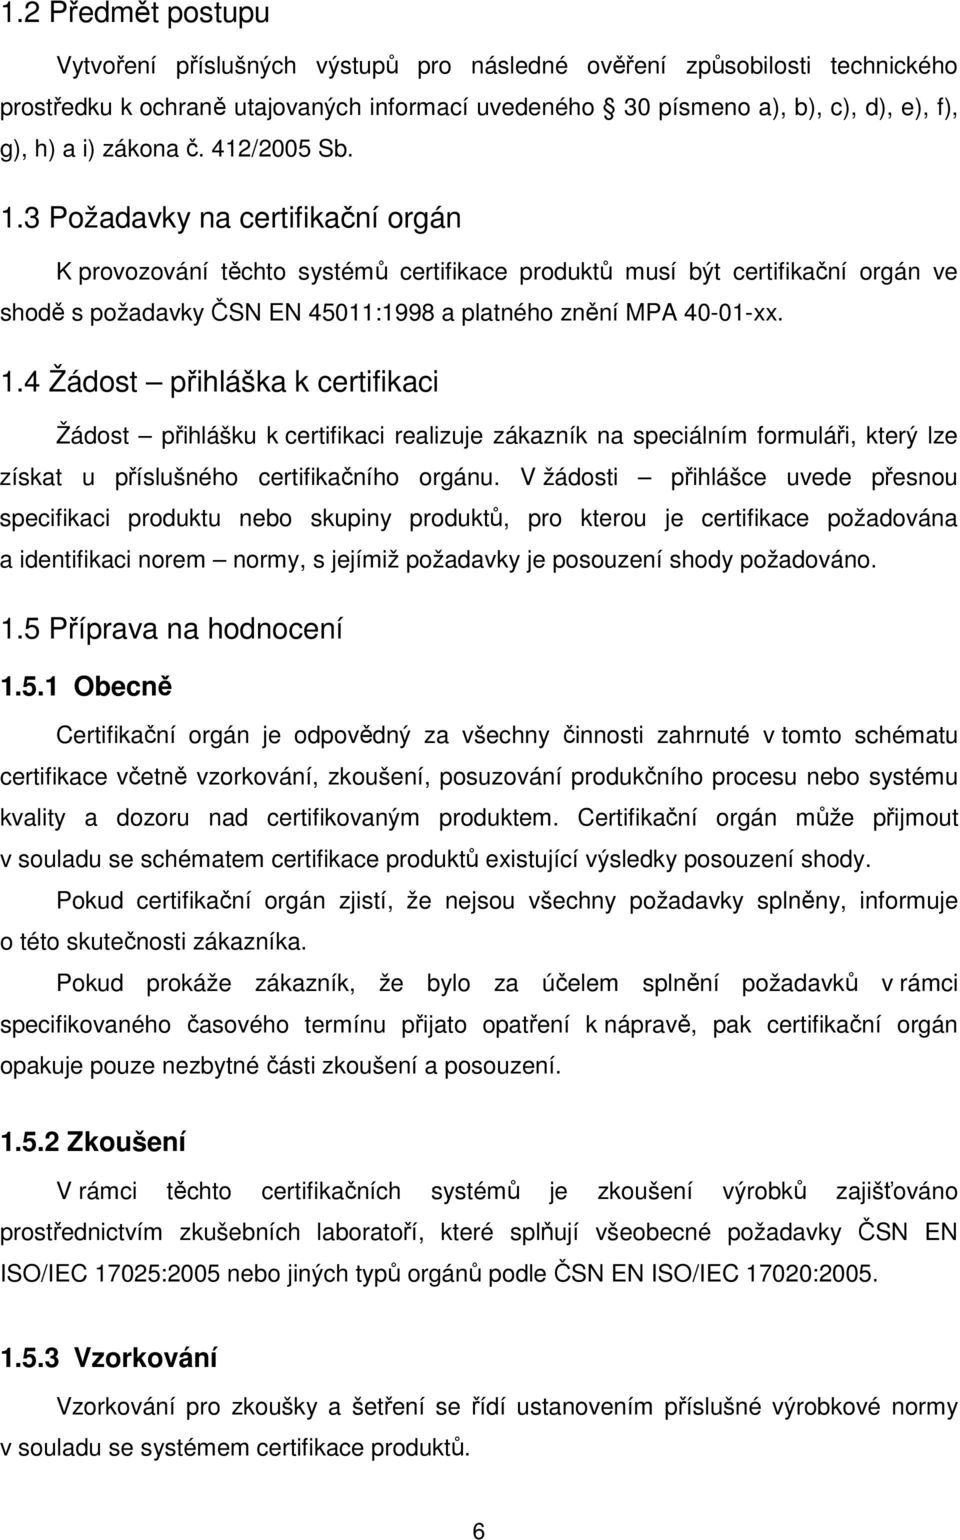 3 Požadavky na certifikační orgán K provozování těchto systémů certifikace produktů musí být certifikační orgán ve shodě s požadavky ČSN EN 45011:1998 a platného znění MPA 40-01-xx. 1.